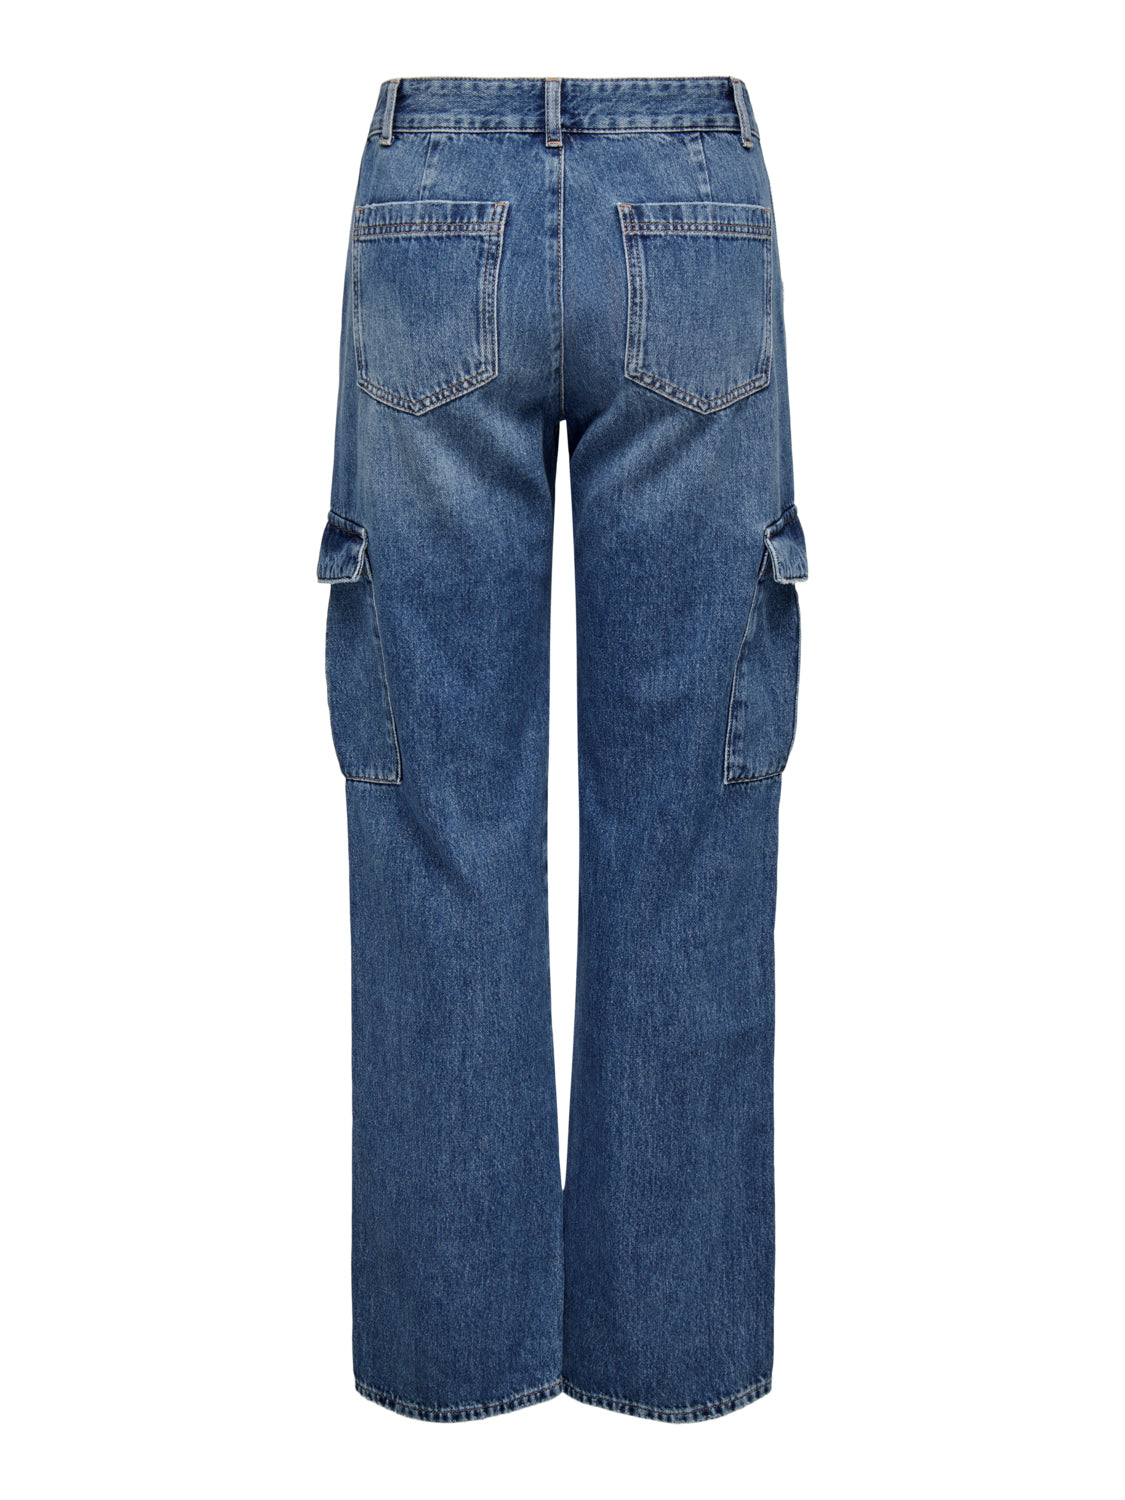 ONLJUNE Jeans - Medium Blue Denim